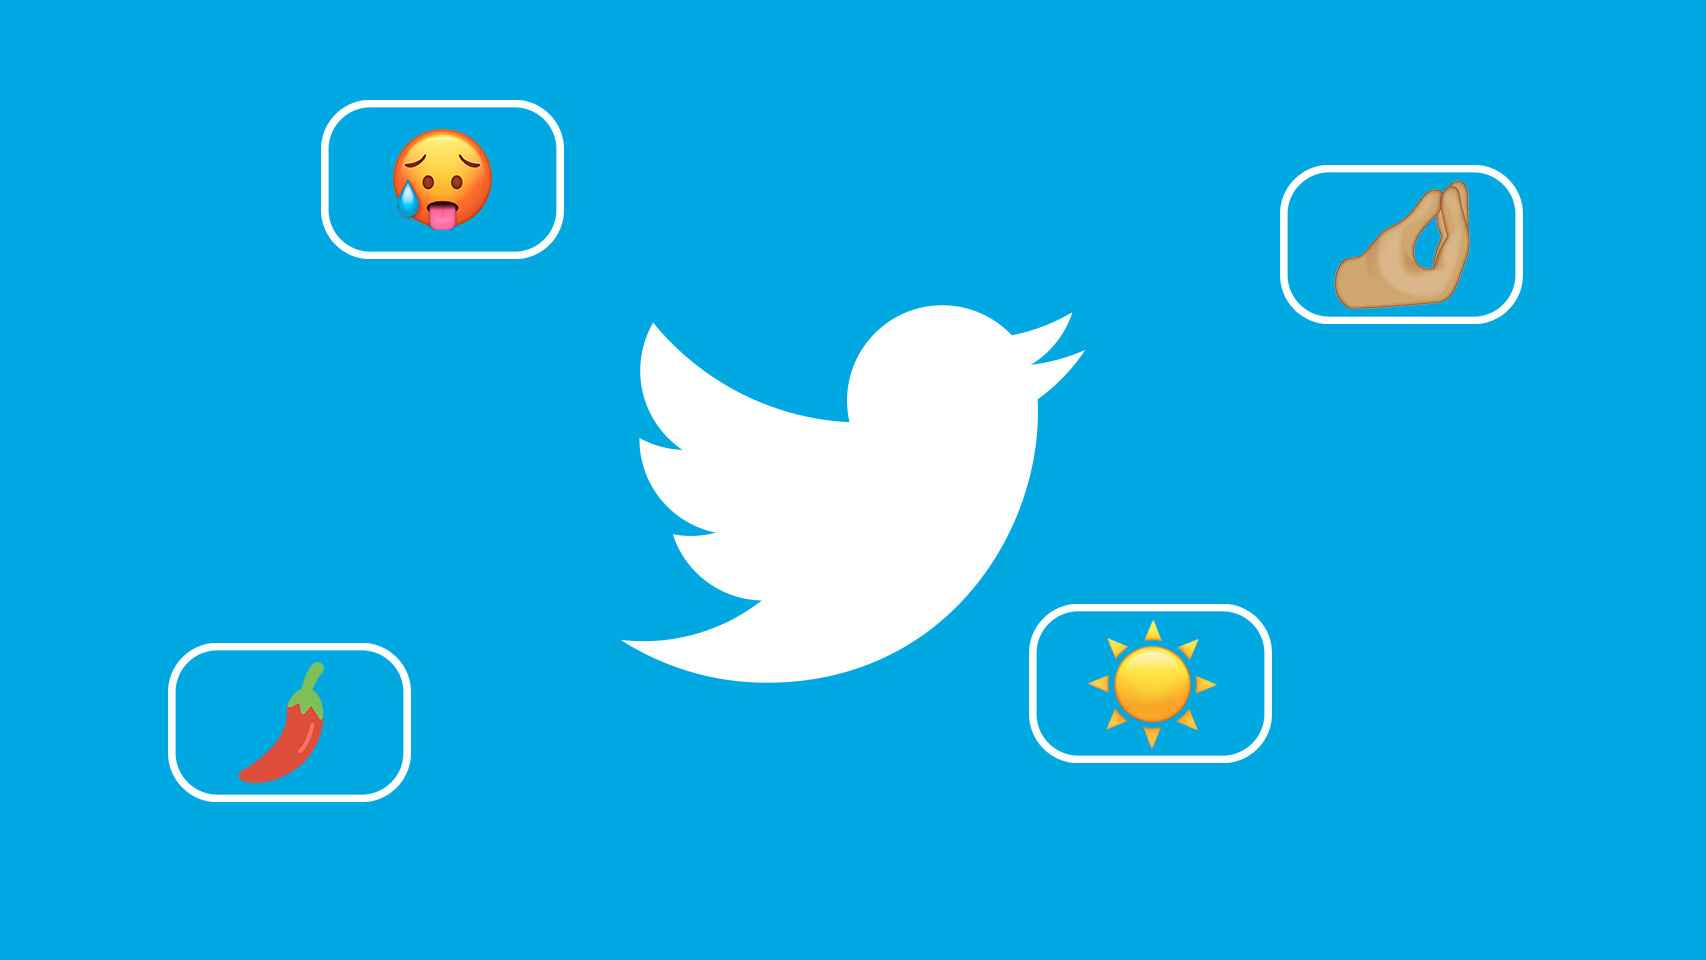 Fotomontaje con el logo de Twitter y emojis.